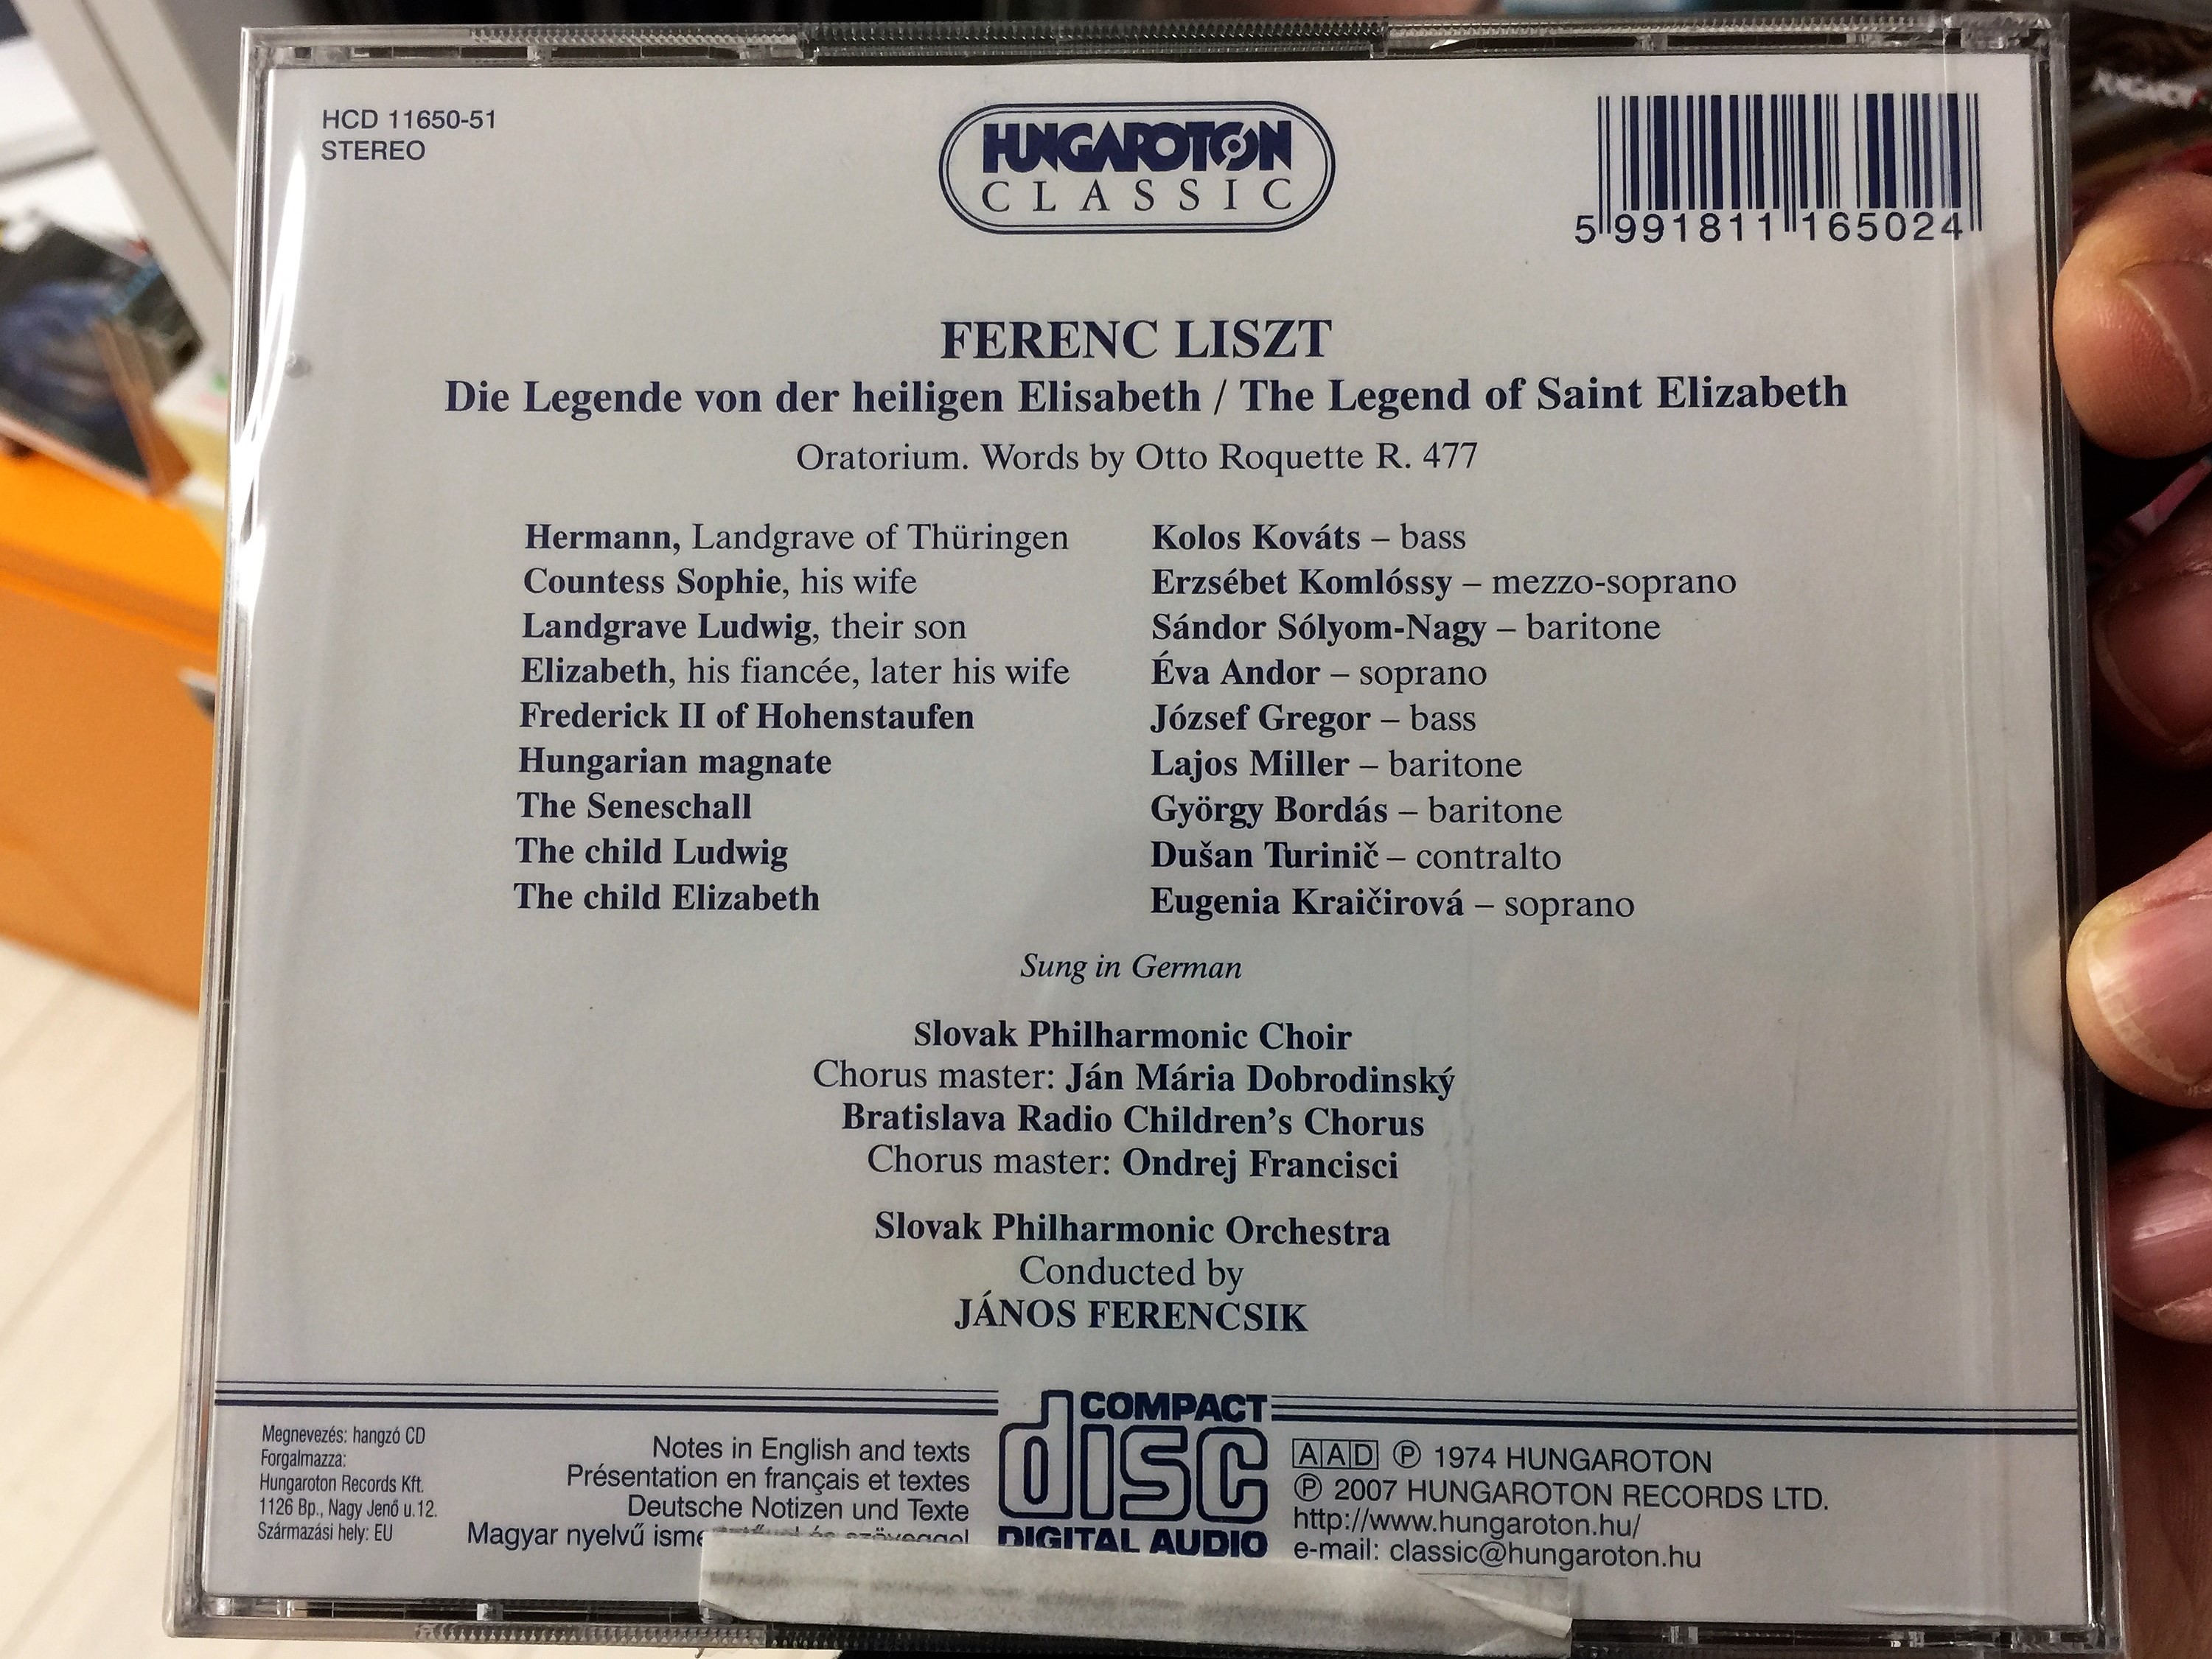 die-legende-von-der-heiligen-elisabeth-liszt-ferenc-audio-cd-2007-the-legend-of-saint-elizabeth-oratorium-hungaroton-hcd-11650-51-2-.jpg